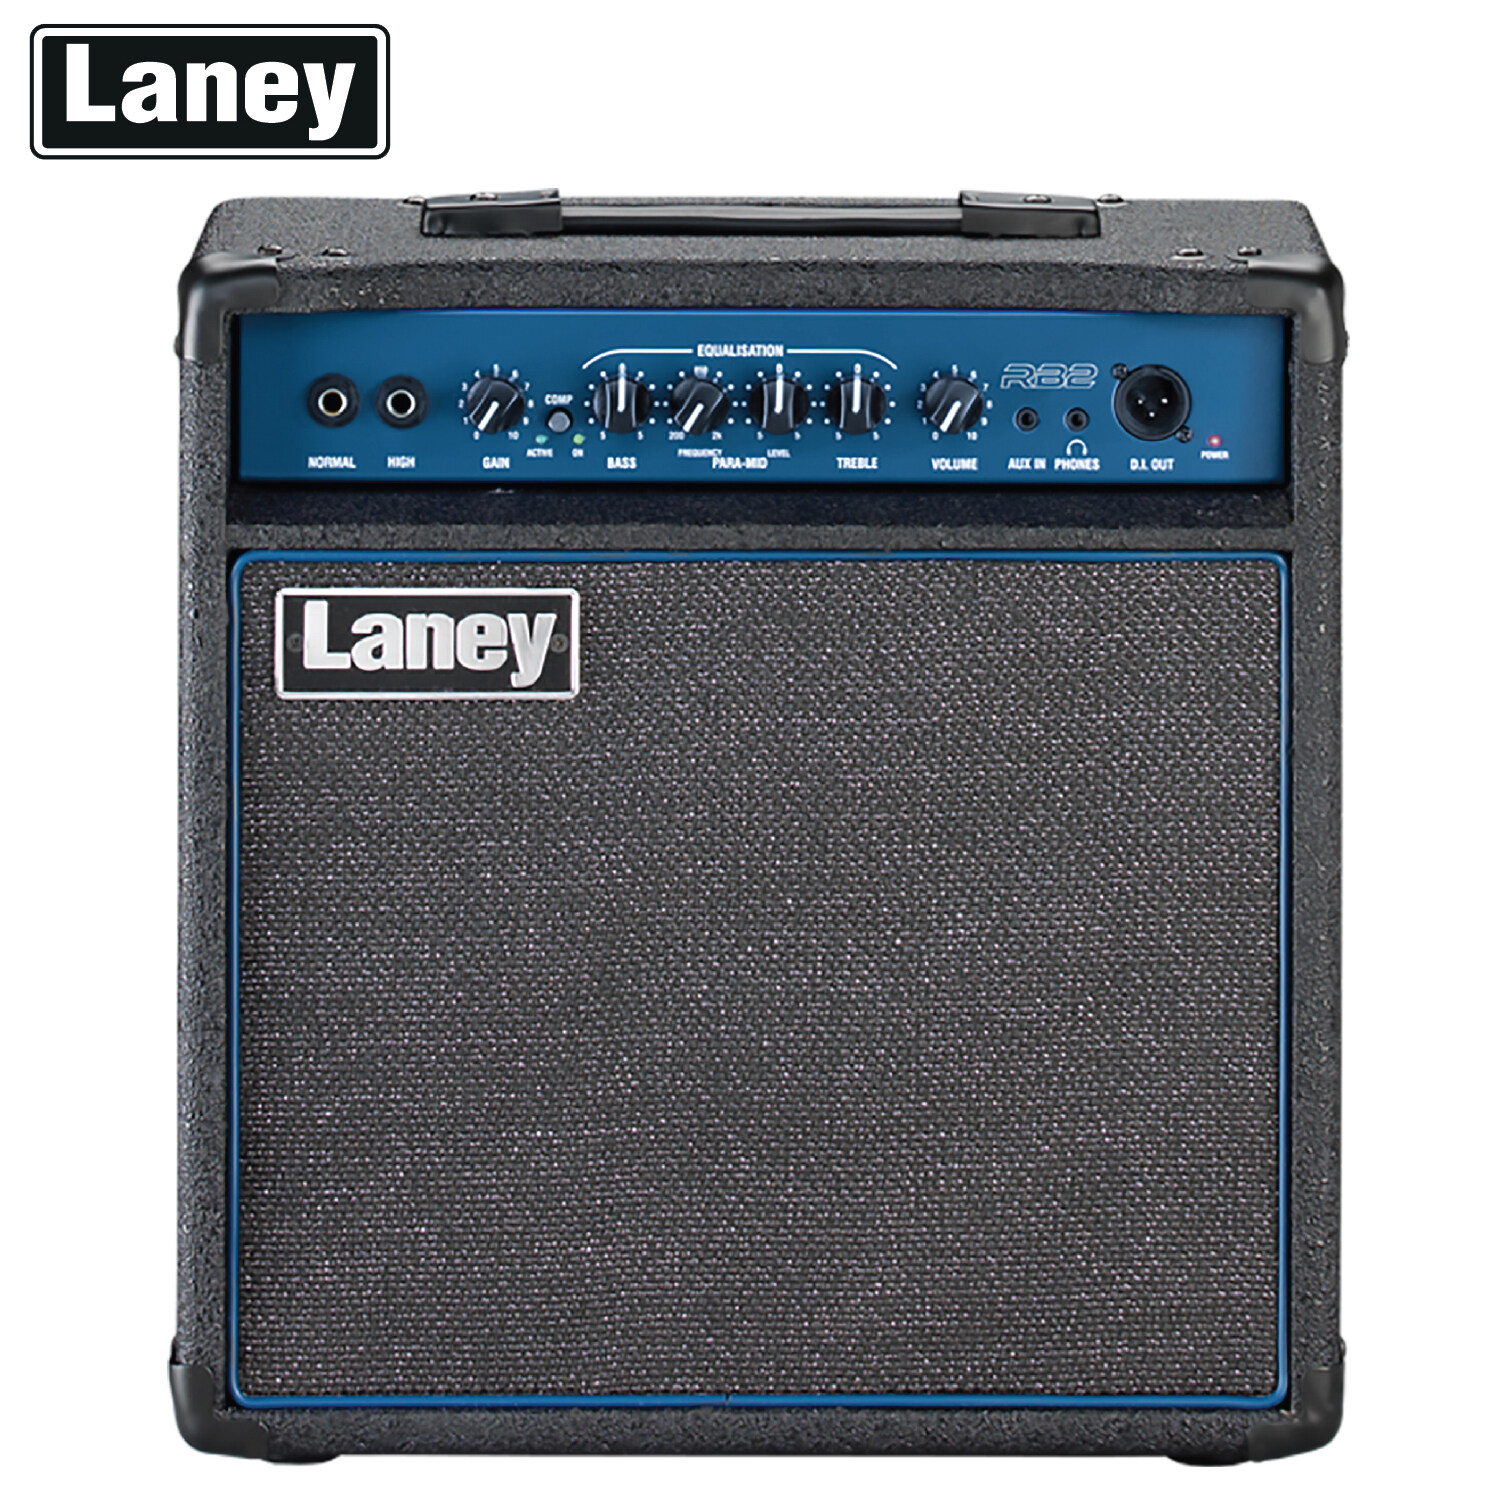 Laney® RB2 Bass Amp แอมป์กีตาร์เบส แอมป์เบส 30 วัตต์ ตั้งเอียงได้ ต่อหูฟัง/Aux In/ D.I. Out ได้ + แถมฟรี คู่มือ & สายไฟ **ประกันศูนย์ 1 ปี**